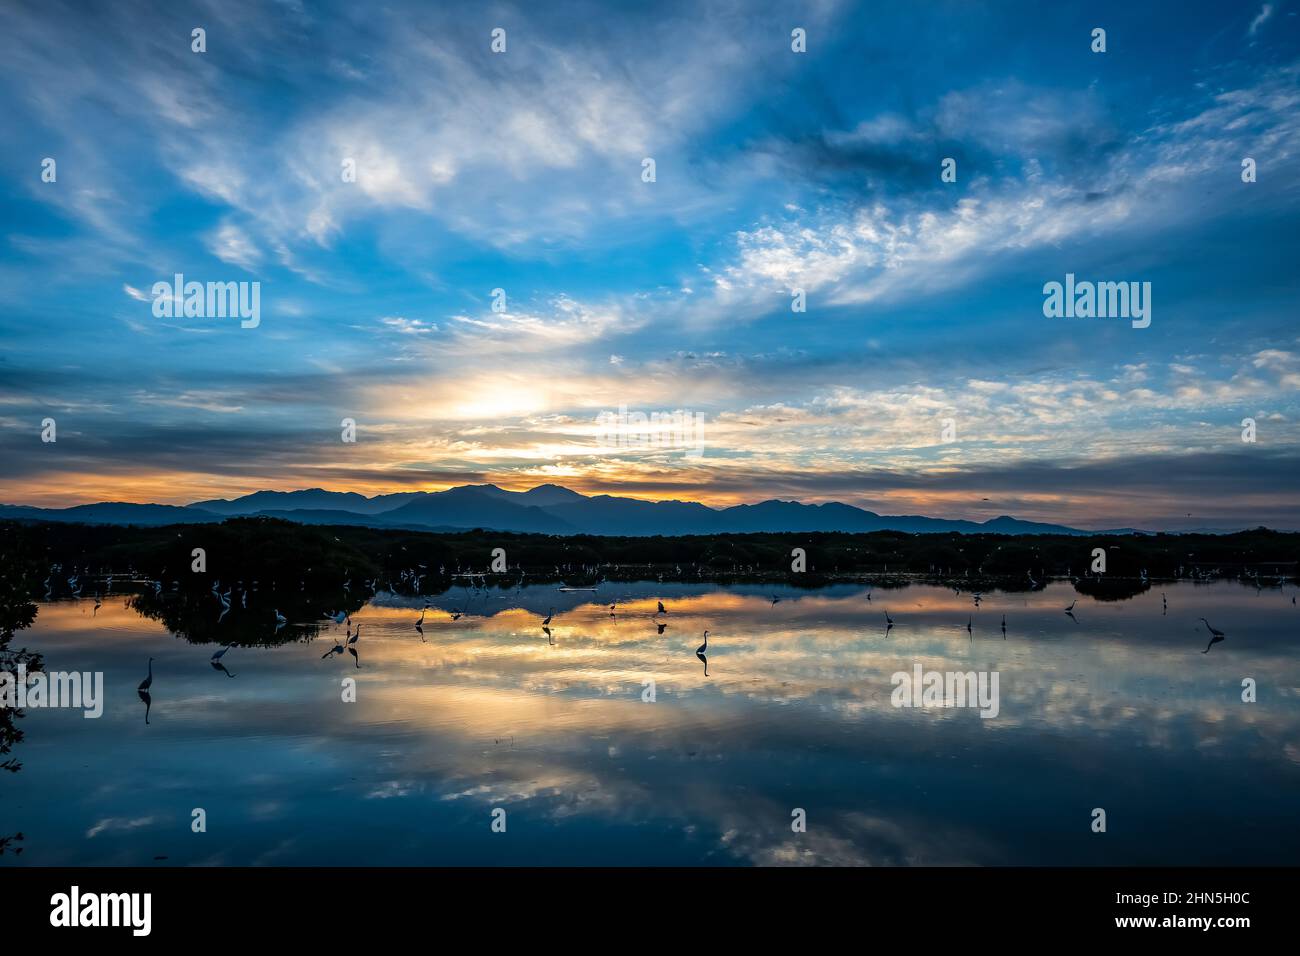 Dawn at a lake filled with water birds. San Blas, Nayarit, Mexico. Stock Photo